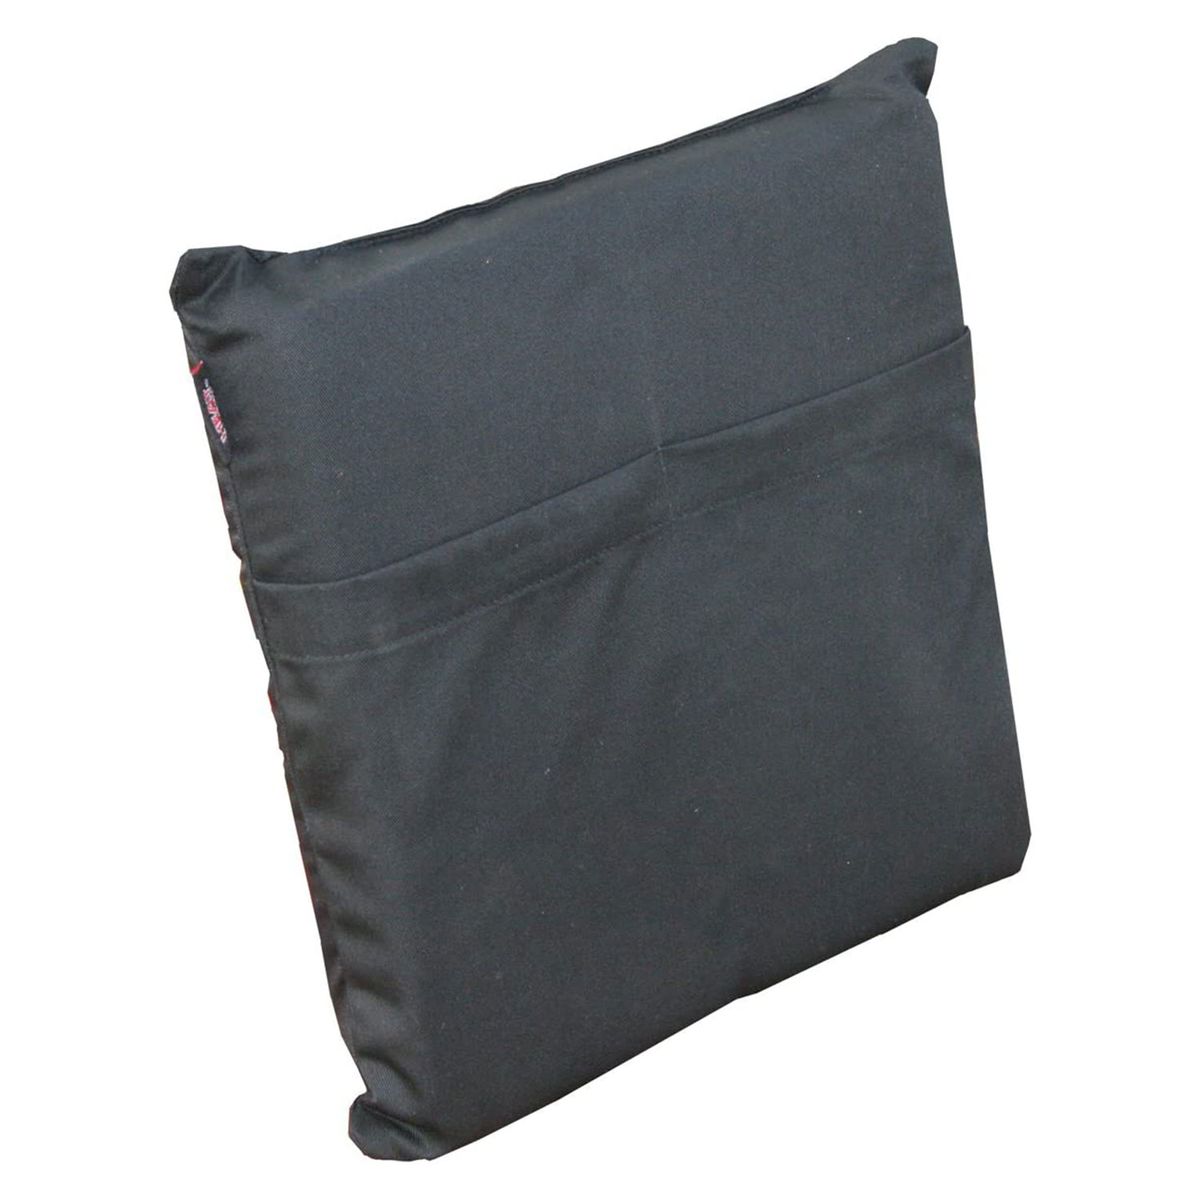 heat cushion